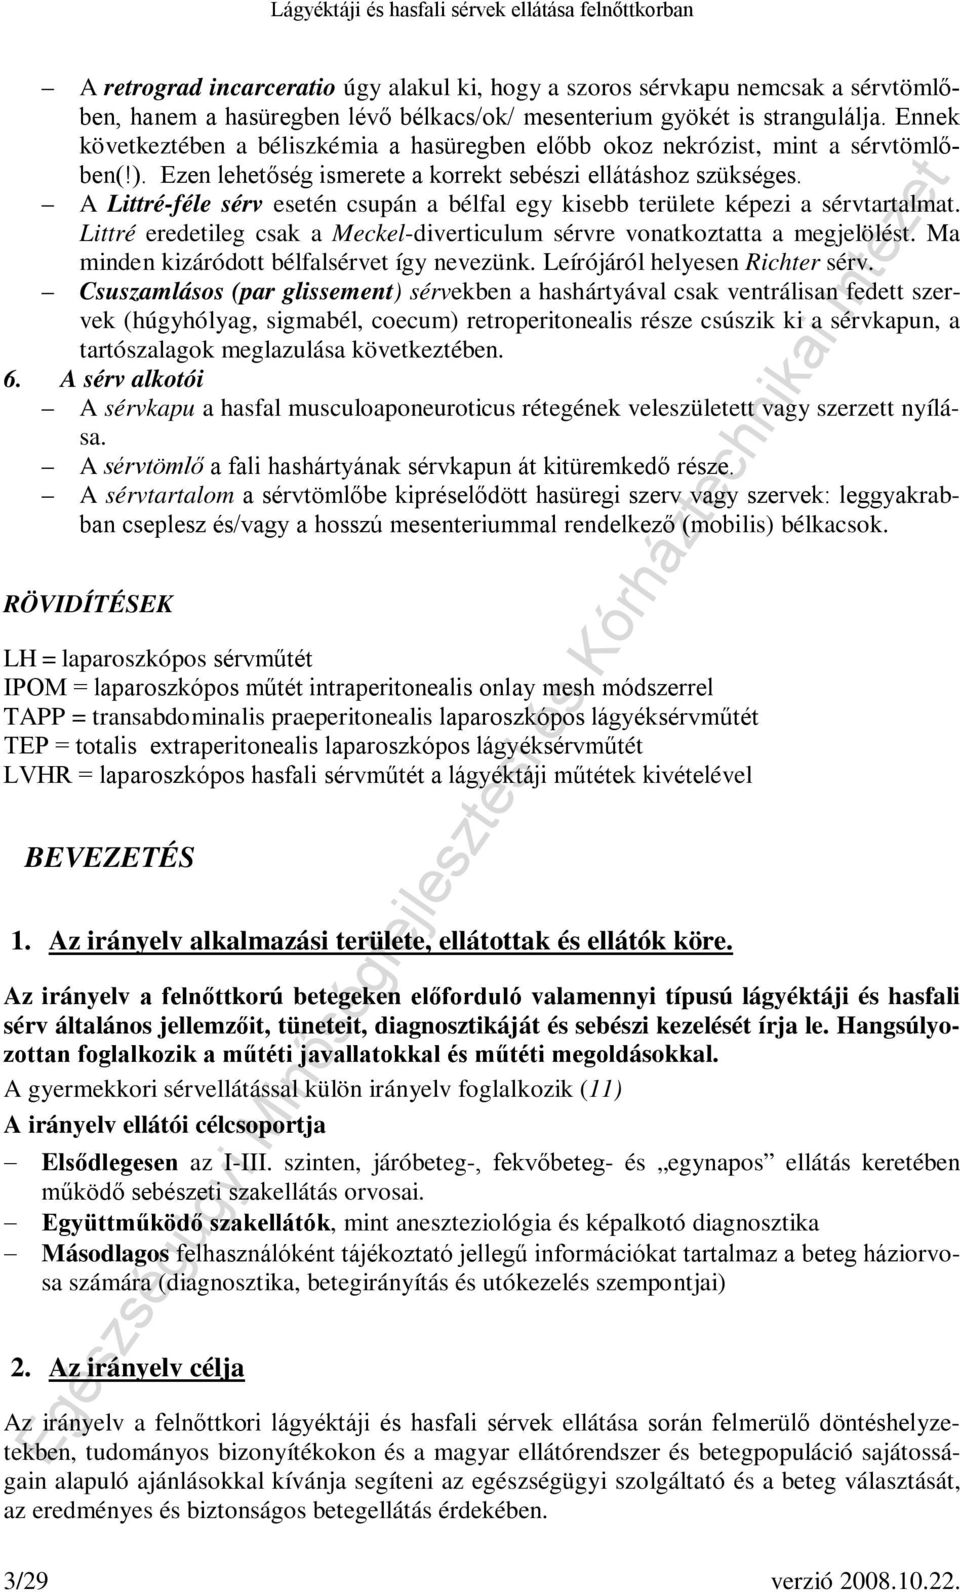 Lágyéktáji és hasfali sérvek ellátása felnőttkorban - PDF Free Download